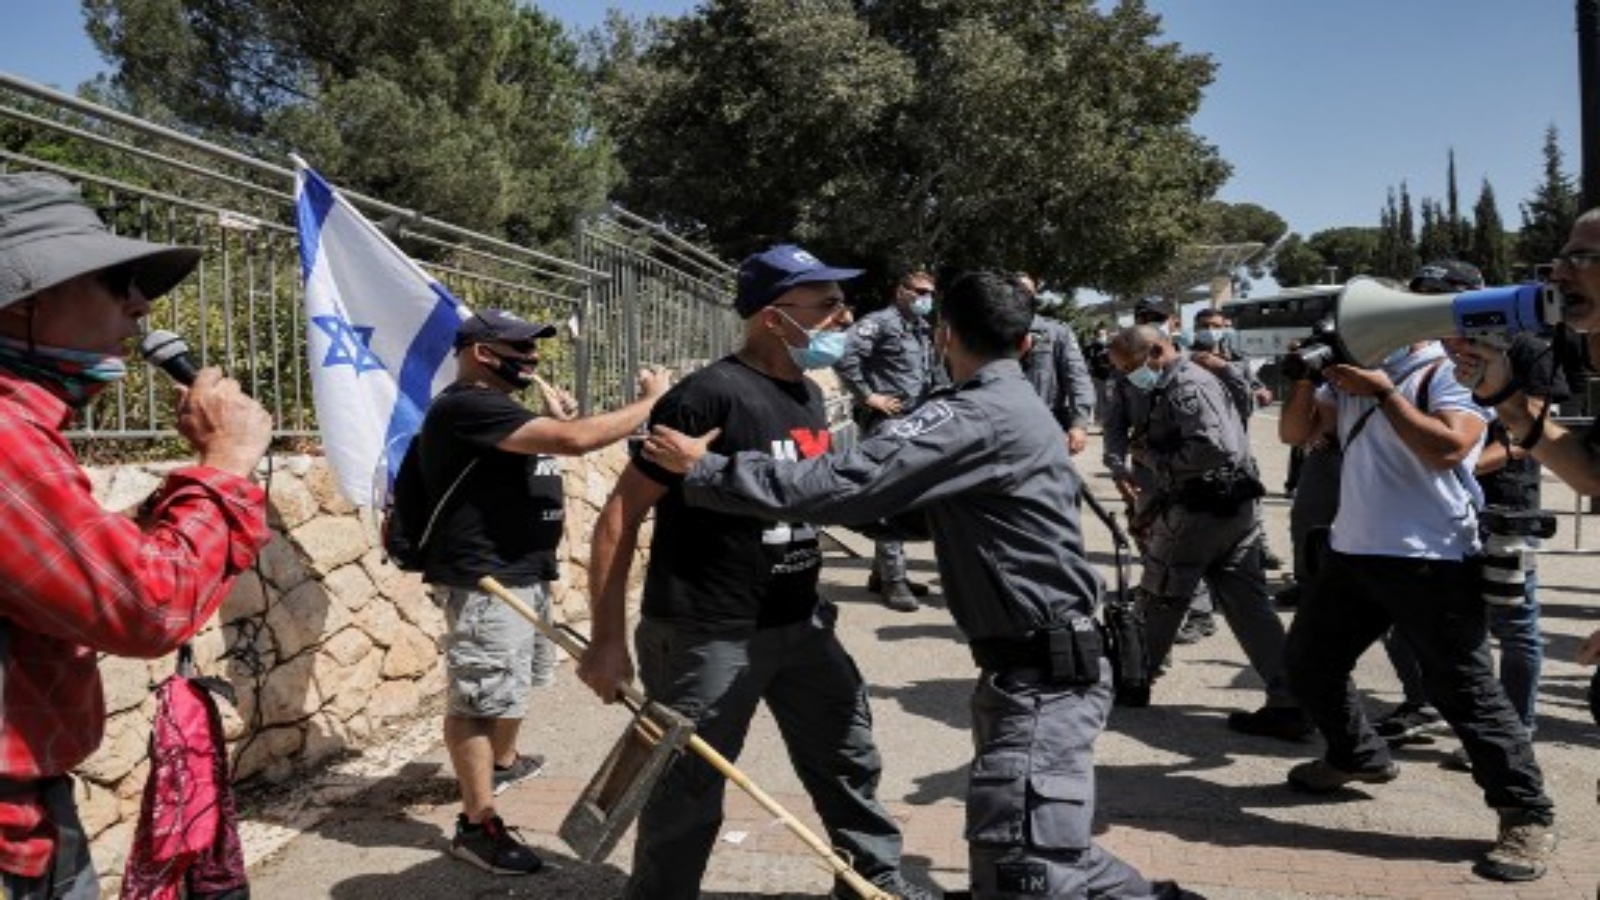 شرطي إسرائيلي يقف حاملا متظاهرا يواجهه ، كلهم ​​يرتدون أقنعة بسبب جائحة فيروس كورونا COVID-19 ، خلال مظاهرة خارج الكنيست (البرلمان الإسرائيلي) في القدس في 29 سبتمبر 2020 ، ضد مشروع قانون محتمل يقيد الاحتجاجات وسط جائحة جديد اللوائح